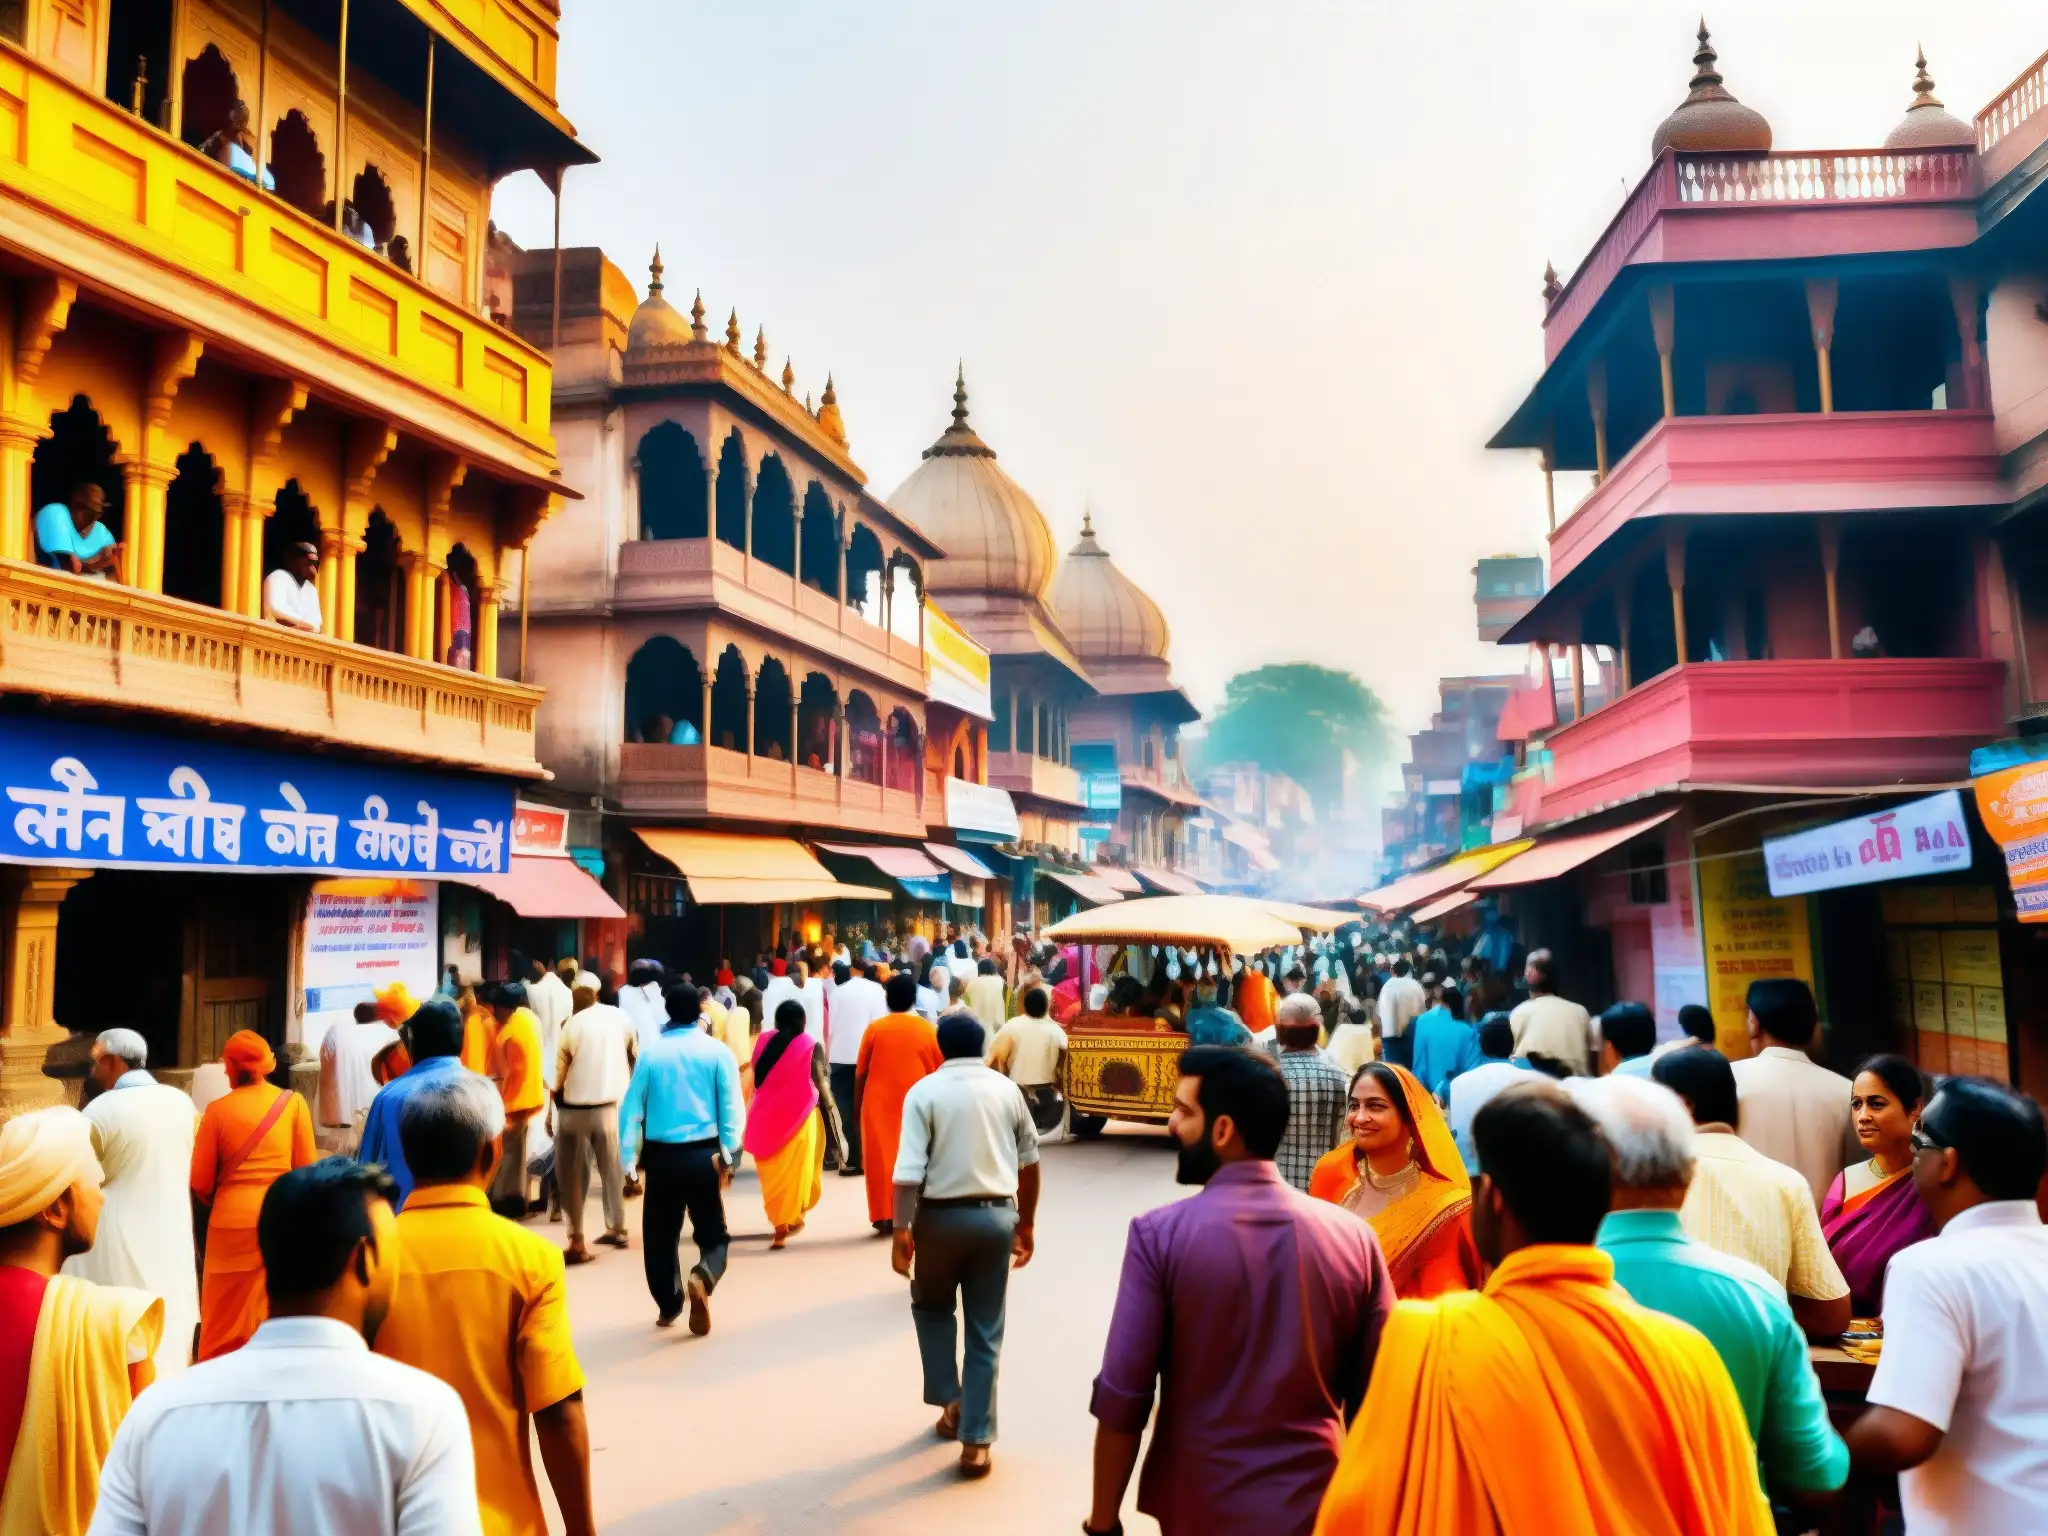 Vista bulliciosa de una calle en Varanasi, India, con colores vibrantes y detalles arquitectónicos